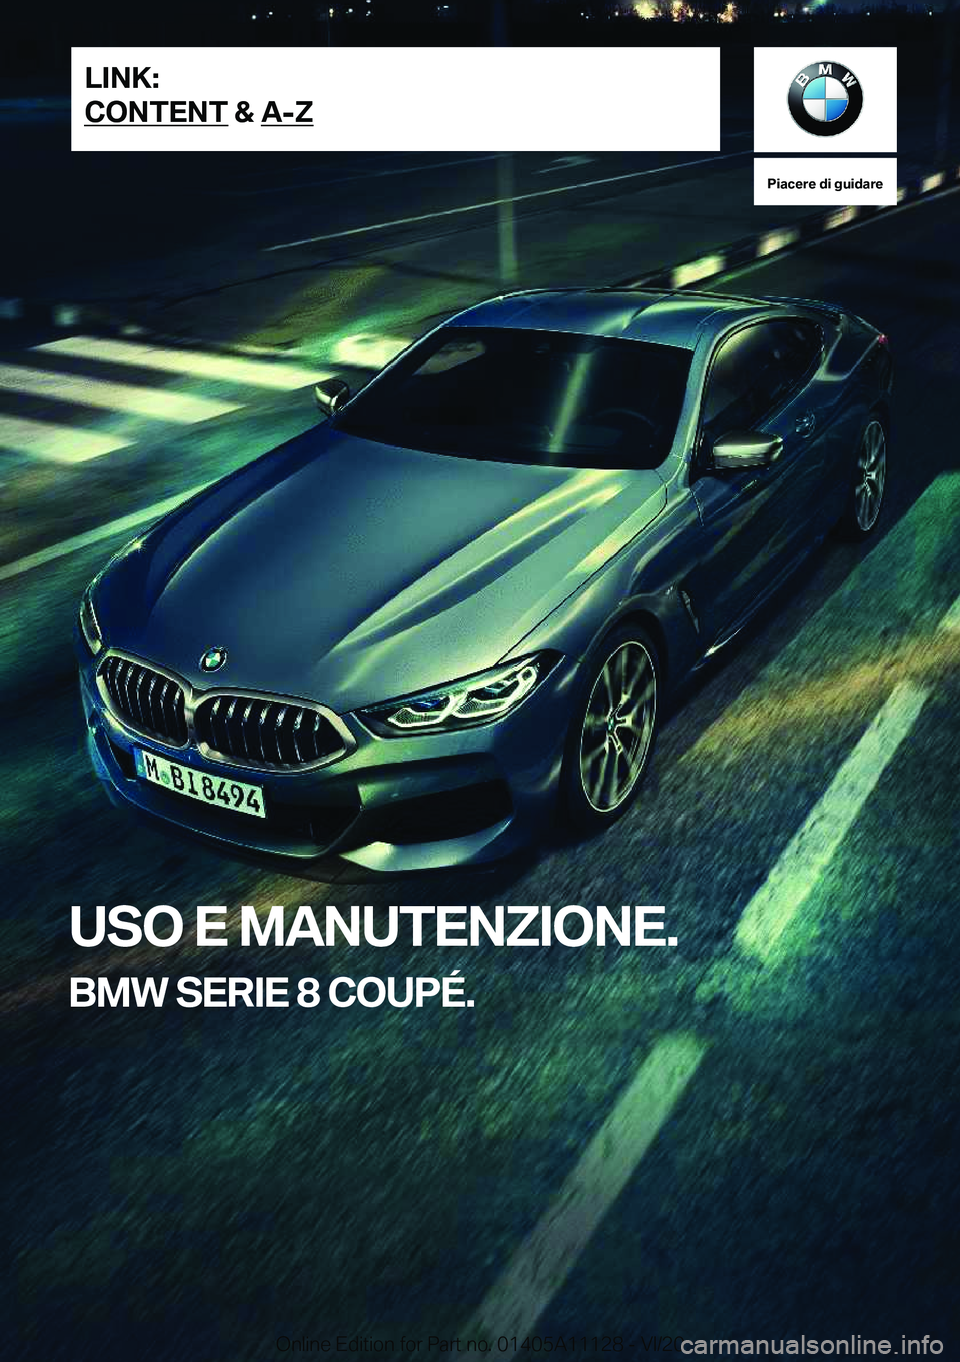 BMW 8 SERIES COUPE 2021  Libretti Di Uso E manutenzione (in Italian) �P�i�a�c�e�r�e��d�i��g�u�i�d�a�r�e
�U�S�O��E��M�A�N�U�T�E�N�Z�I�O�N�E�.
�B�M�W��S�E�R�I�E��8��C�O�U�P�